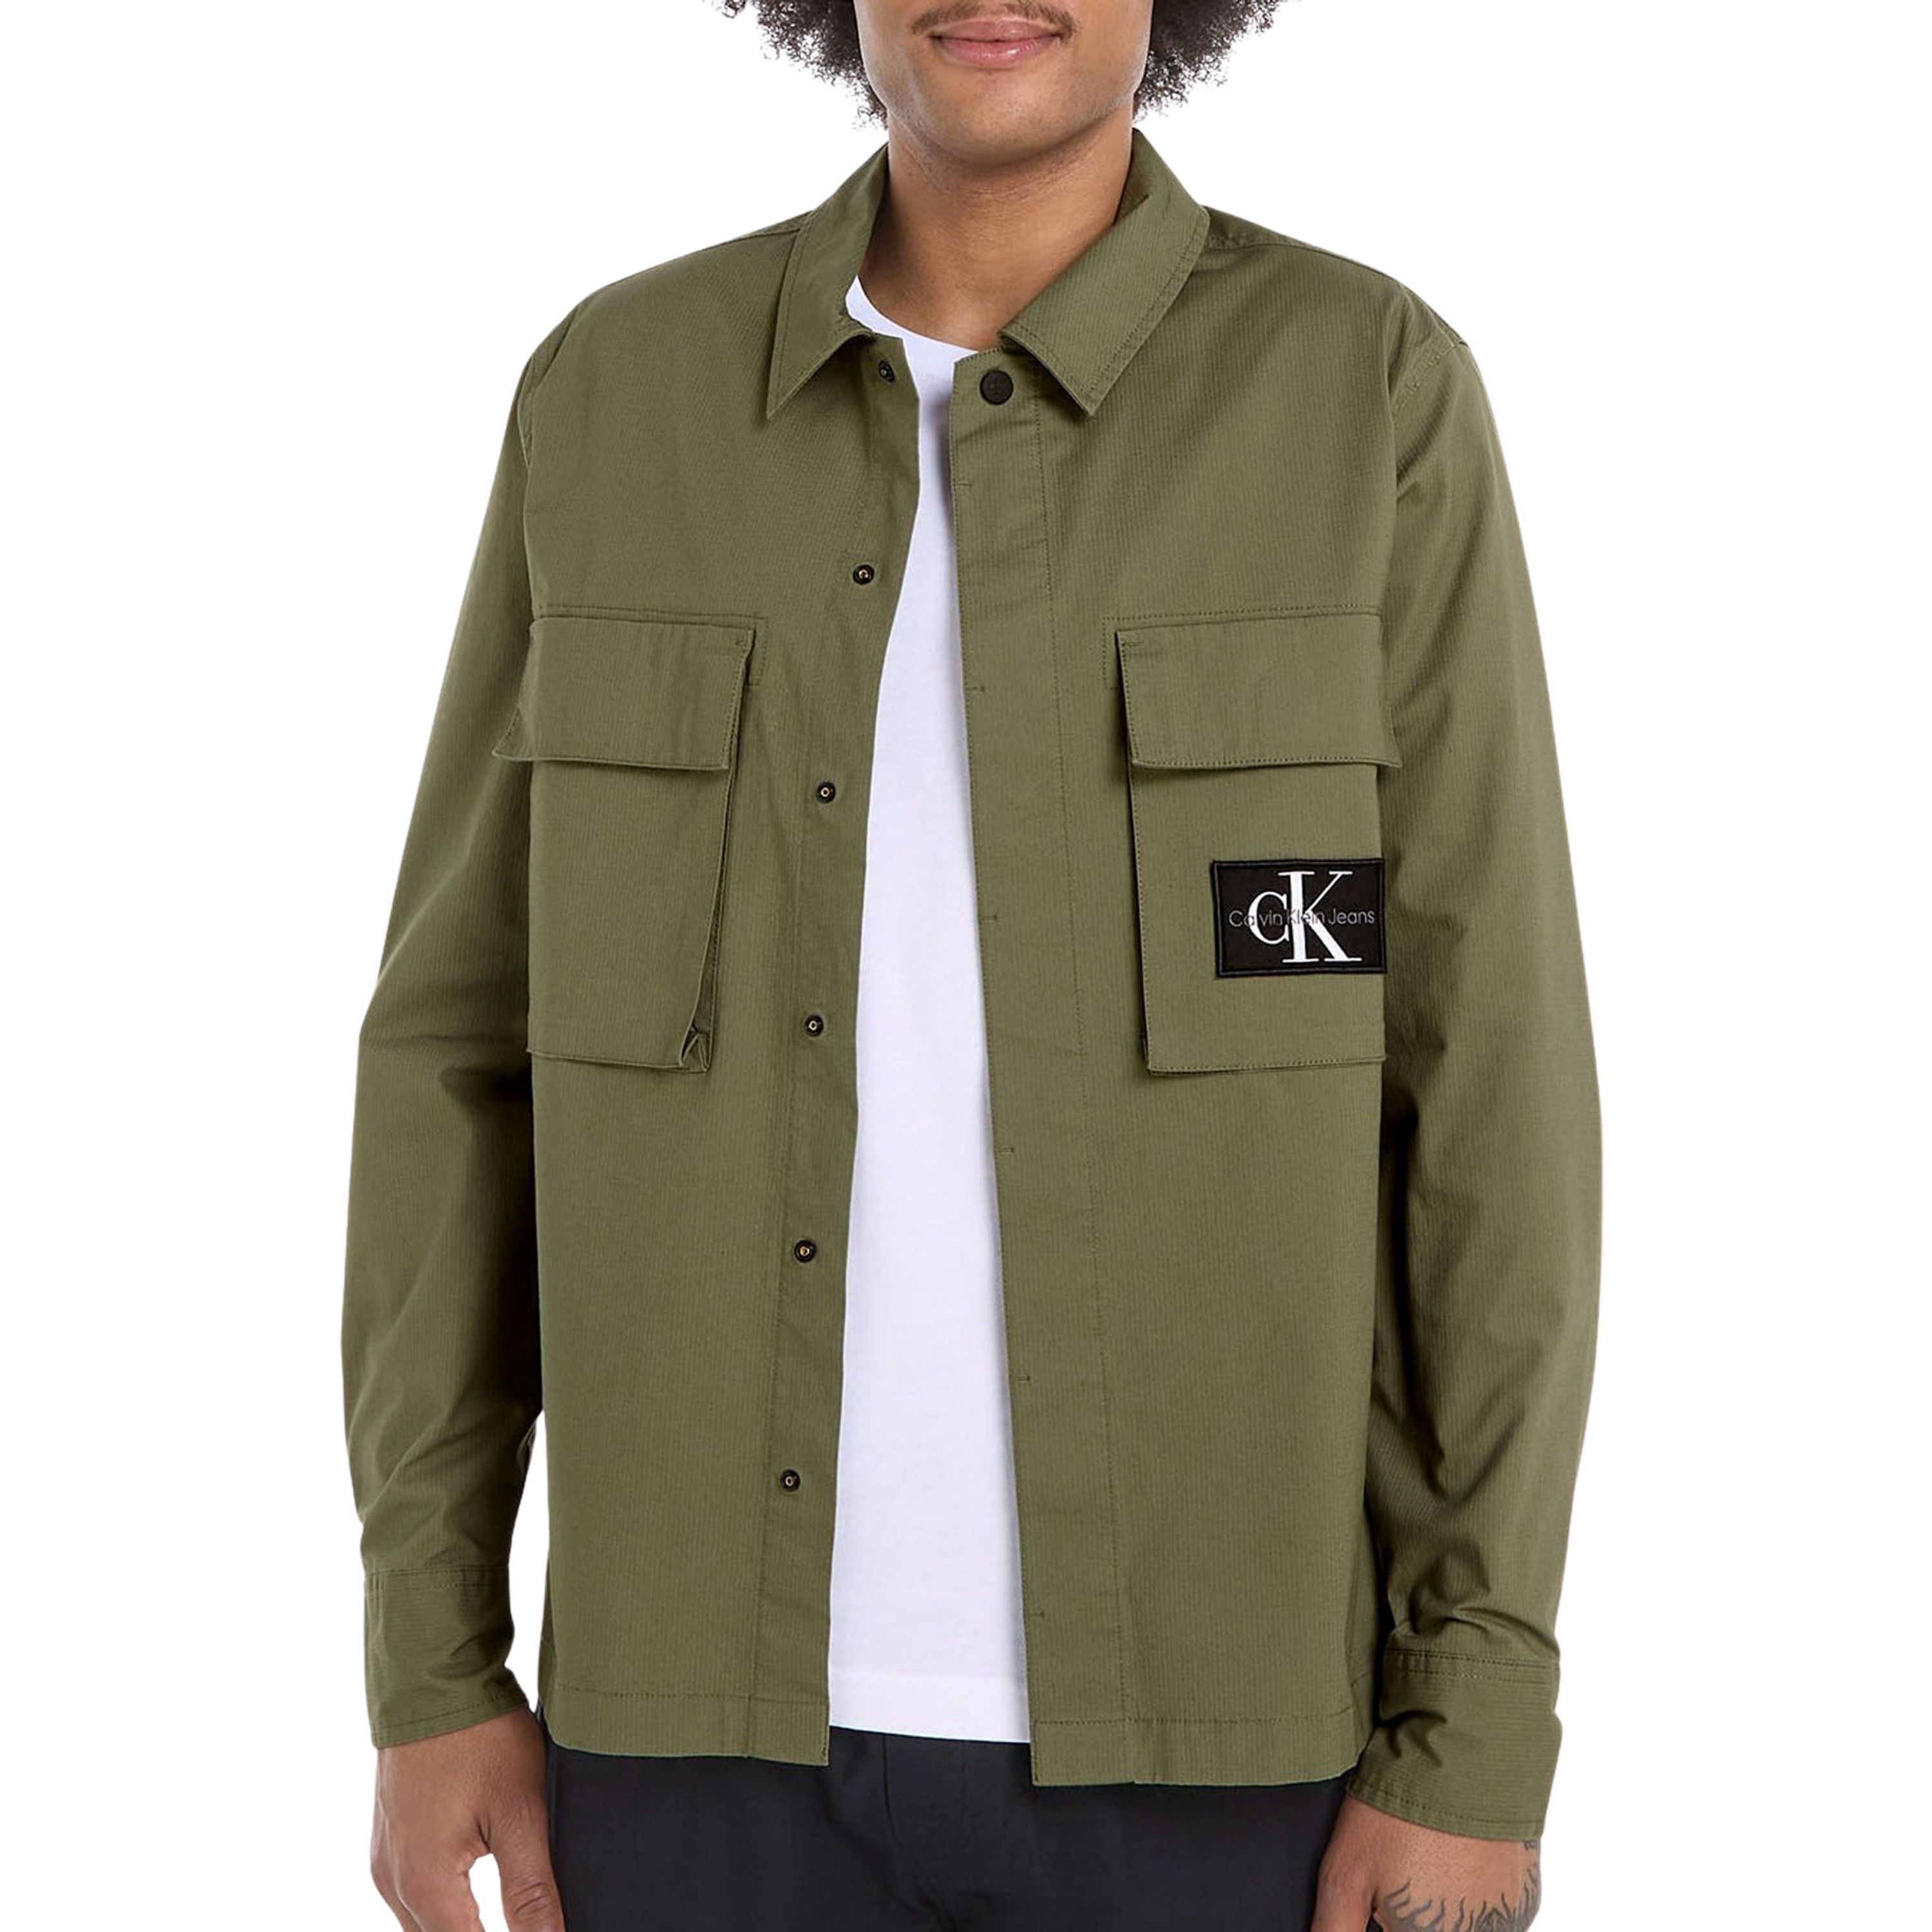 Calvin Klein Jeans Militair Groen Katoenen Shirt CK Logo Green Heren